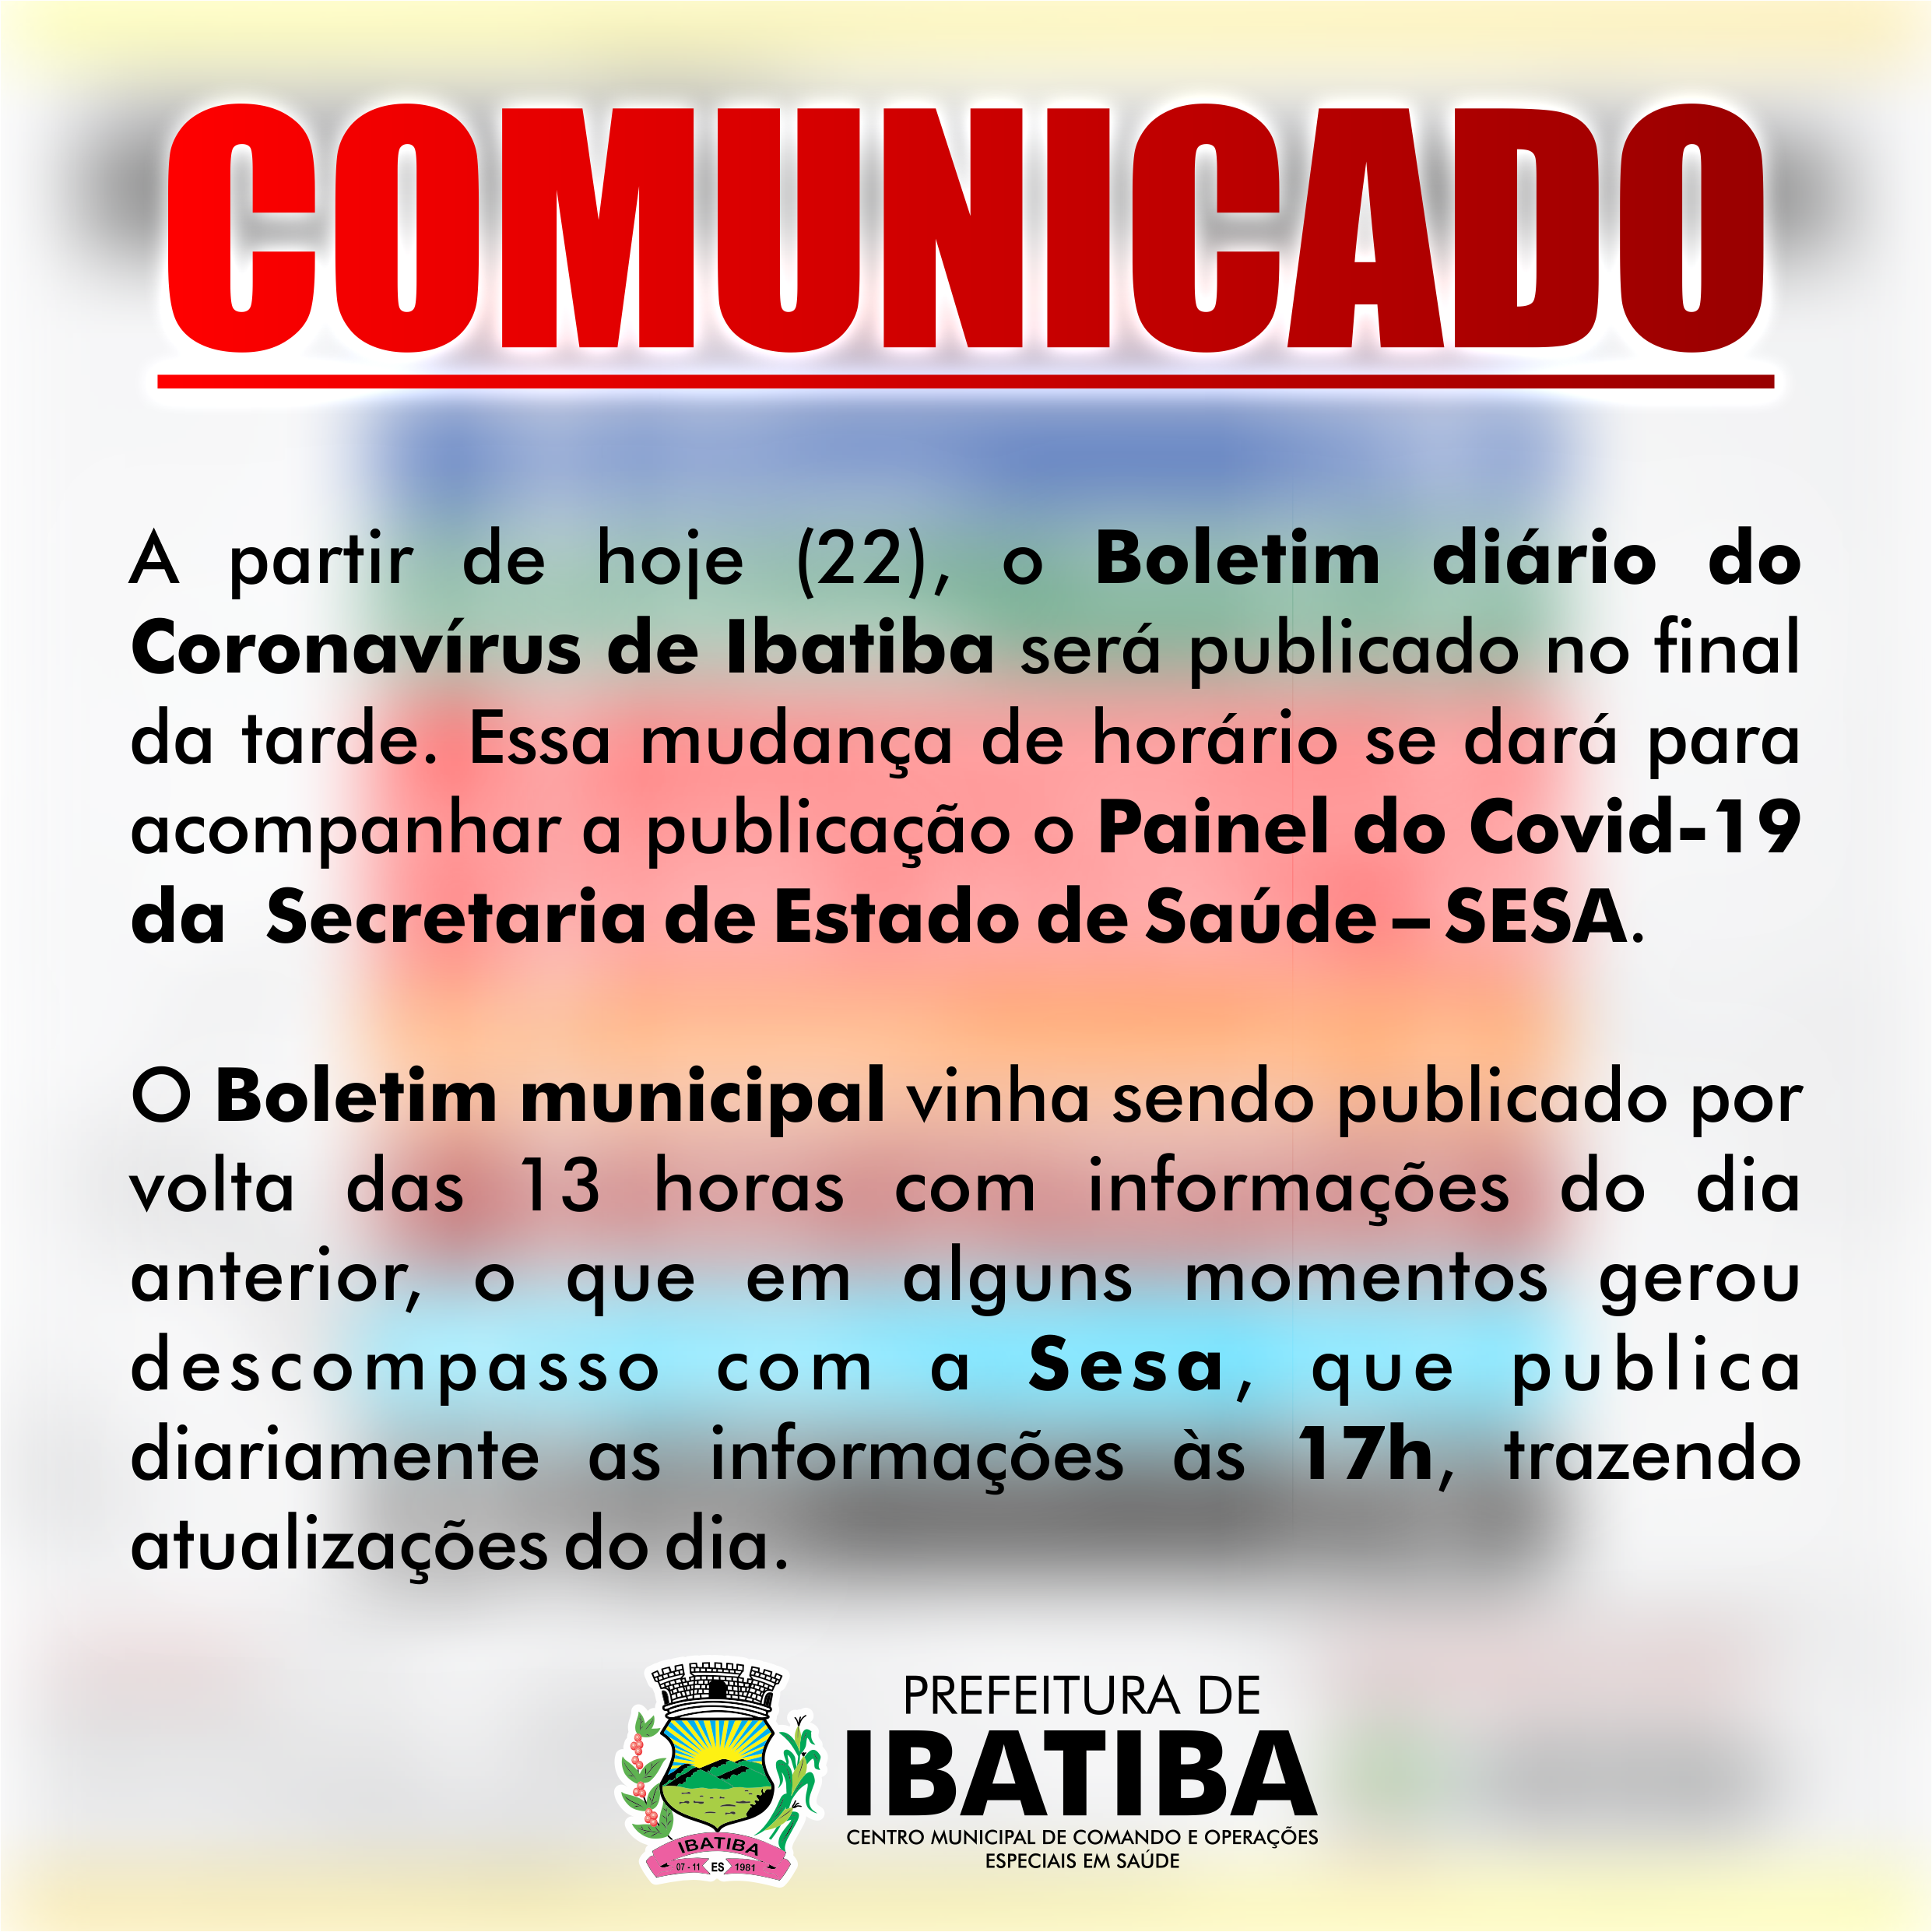 Comunicado: Boletim diário do Coronavírus de Ibatiba